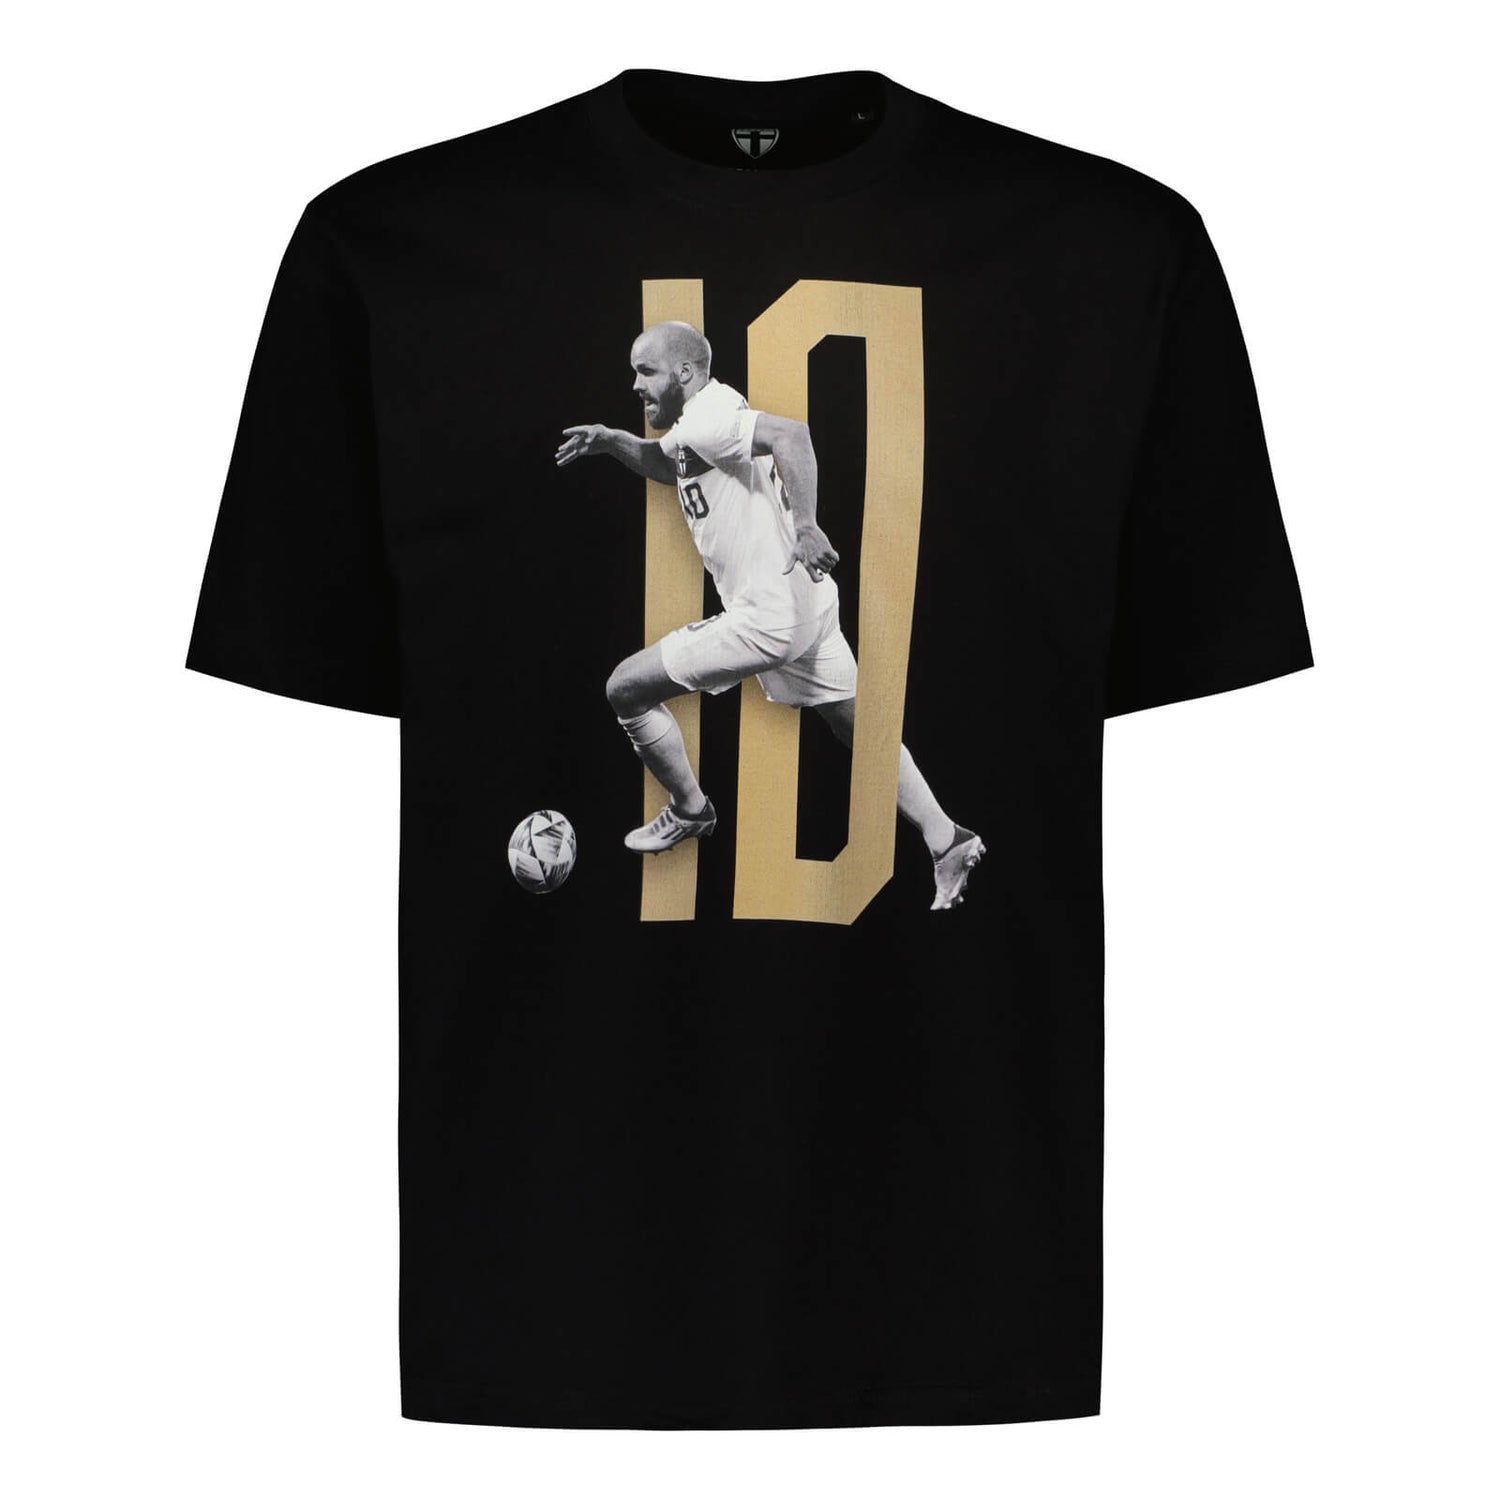 Teemu Pukki #10 Fan T-shirt, Black, Kids